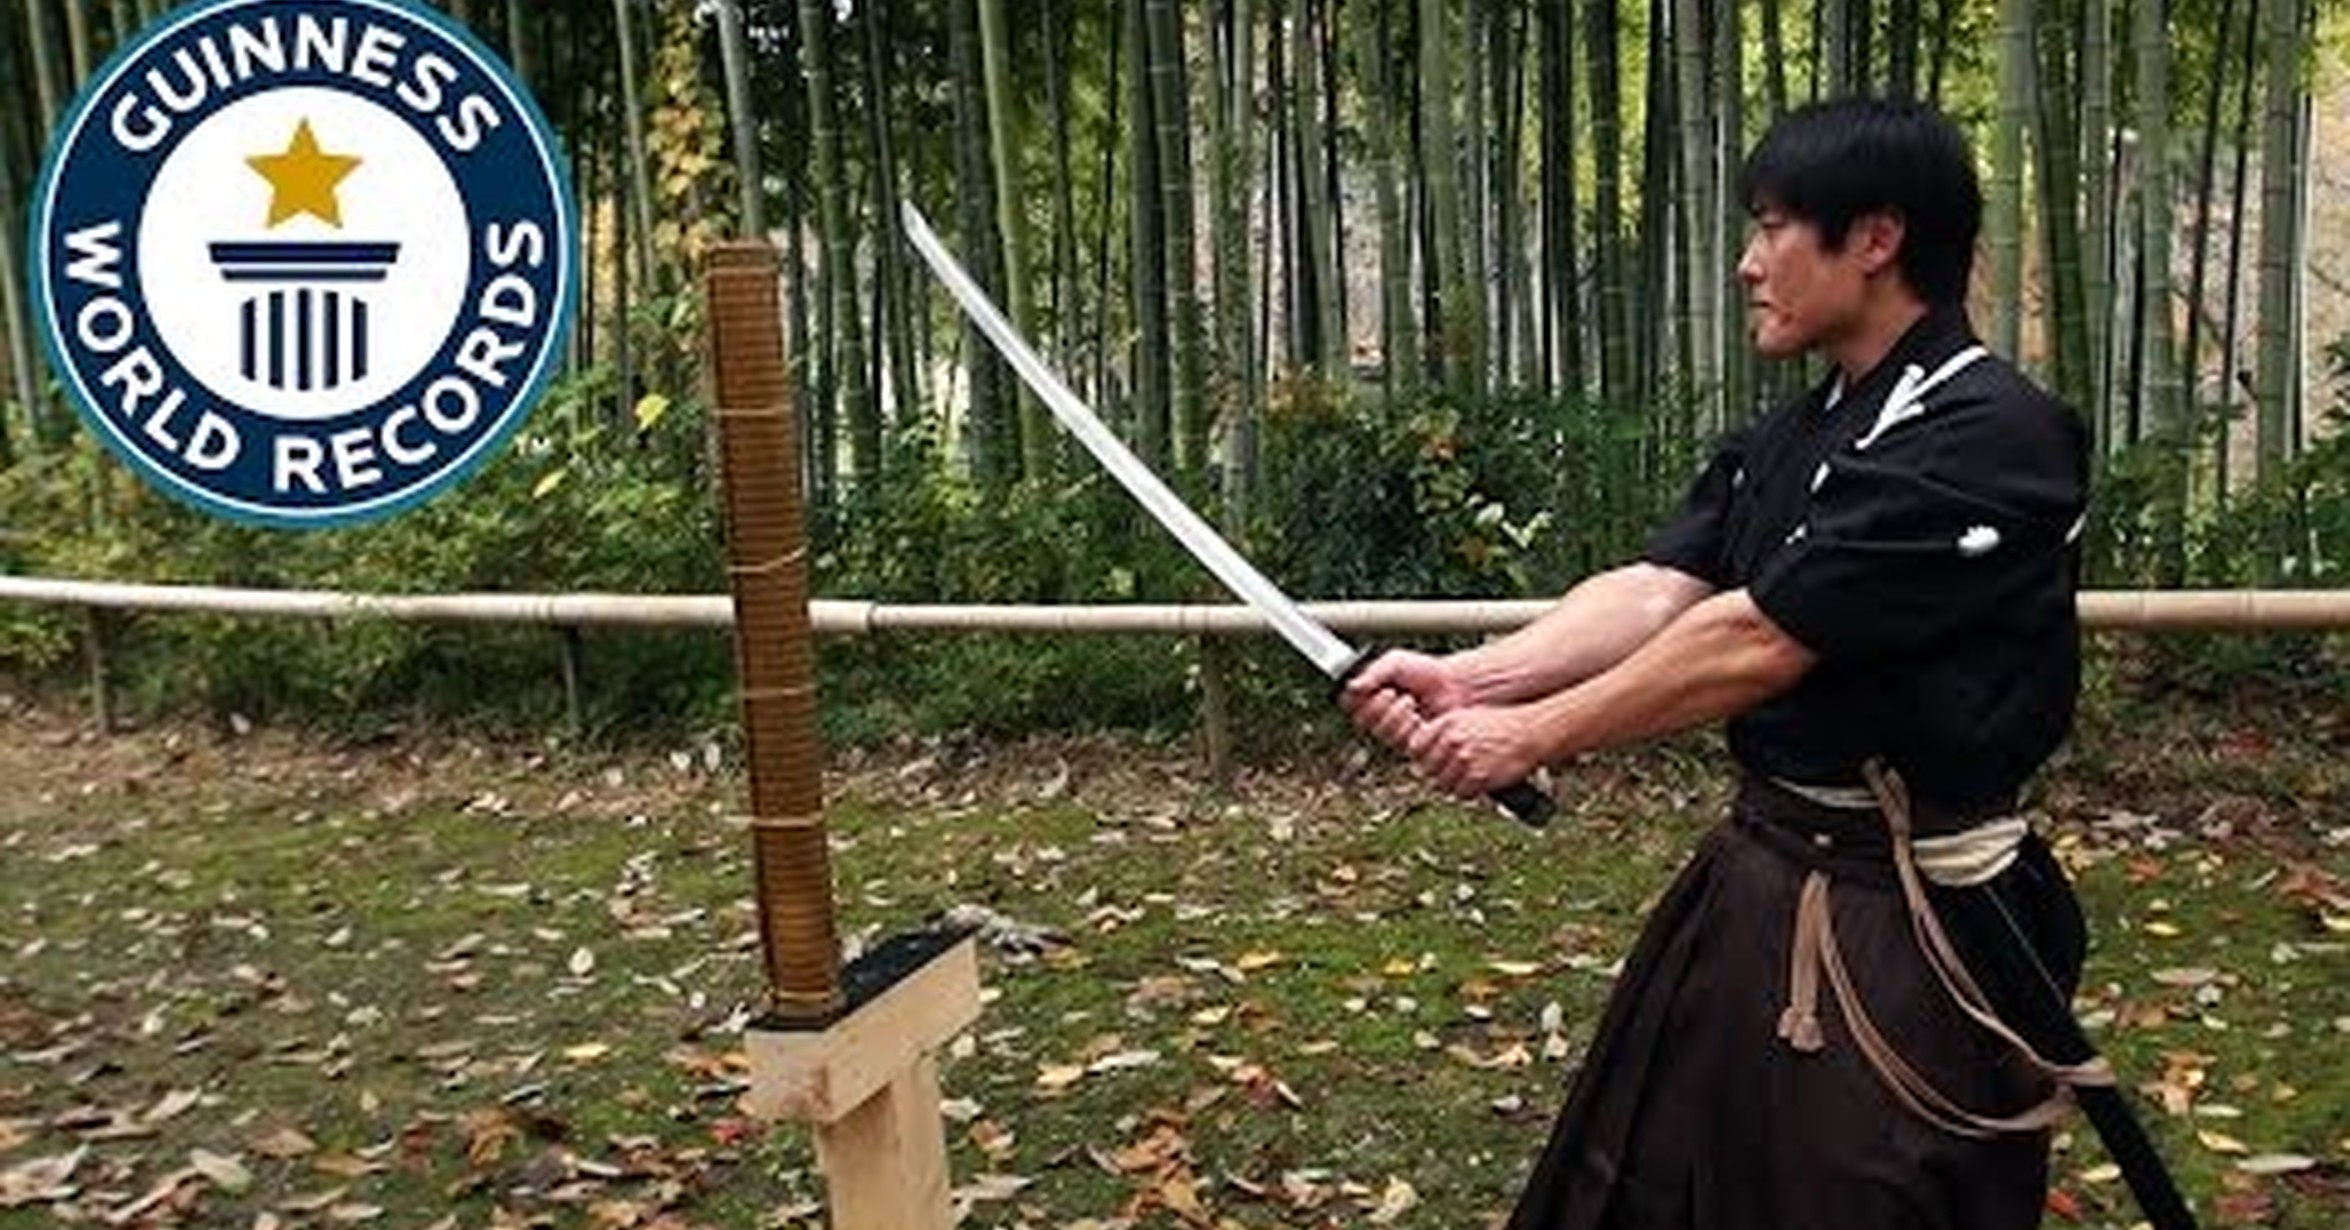 Я продолжу рубить мечом и без руки. Мачии Исао катана. Человек с катаной в руках. Человек с катаной в ножнах. Меч самурая в руке.